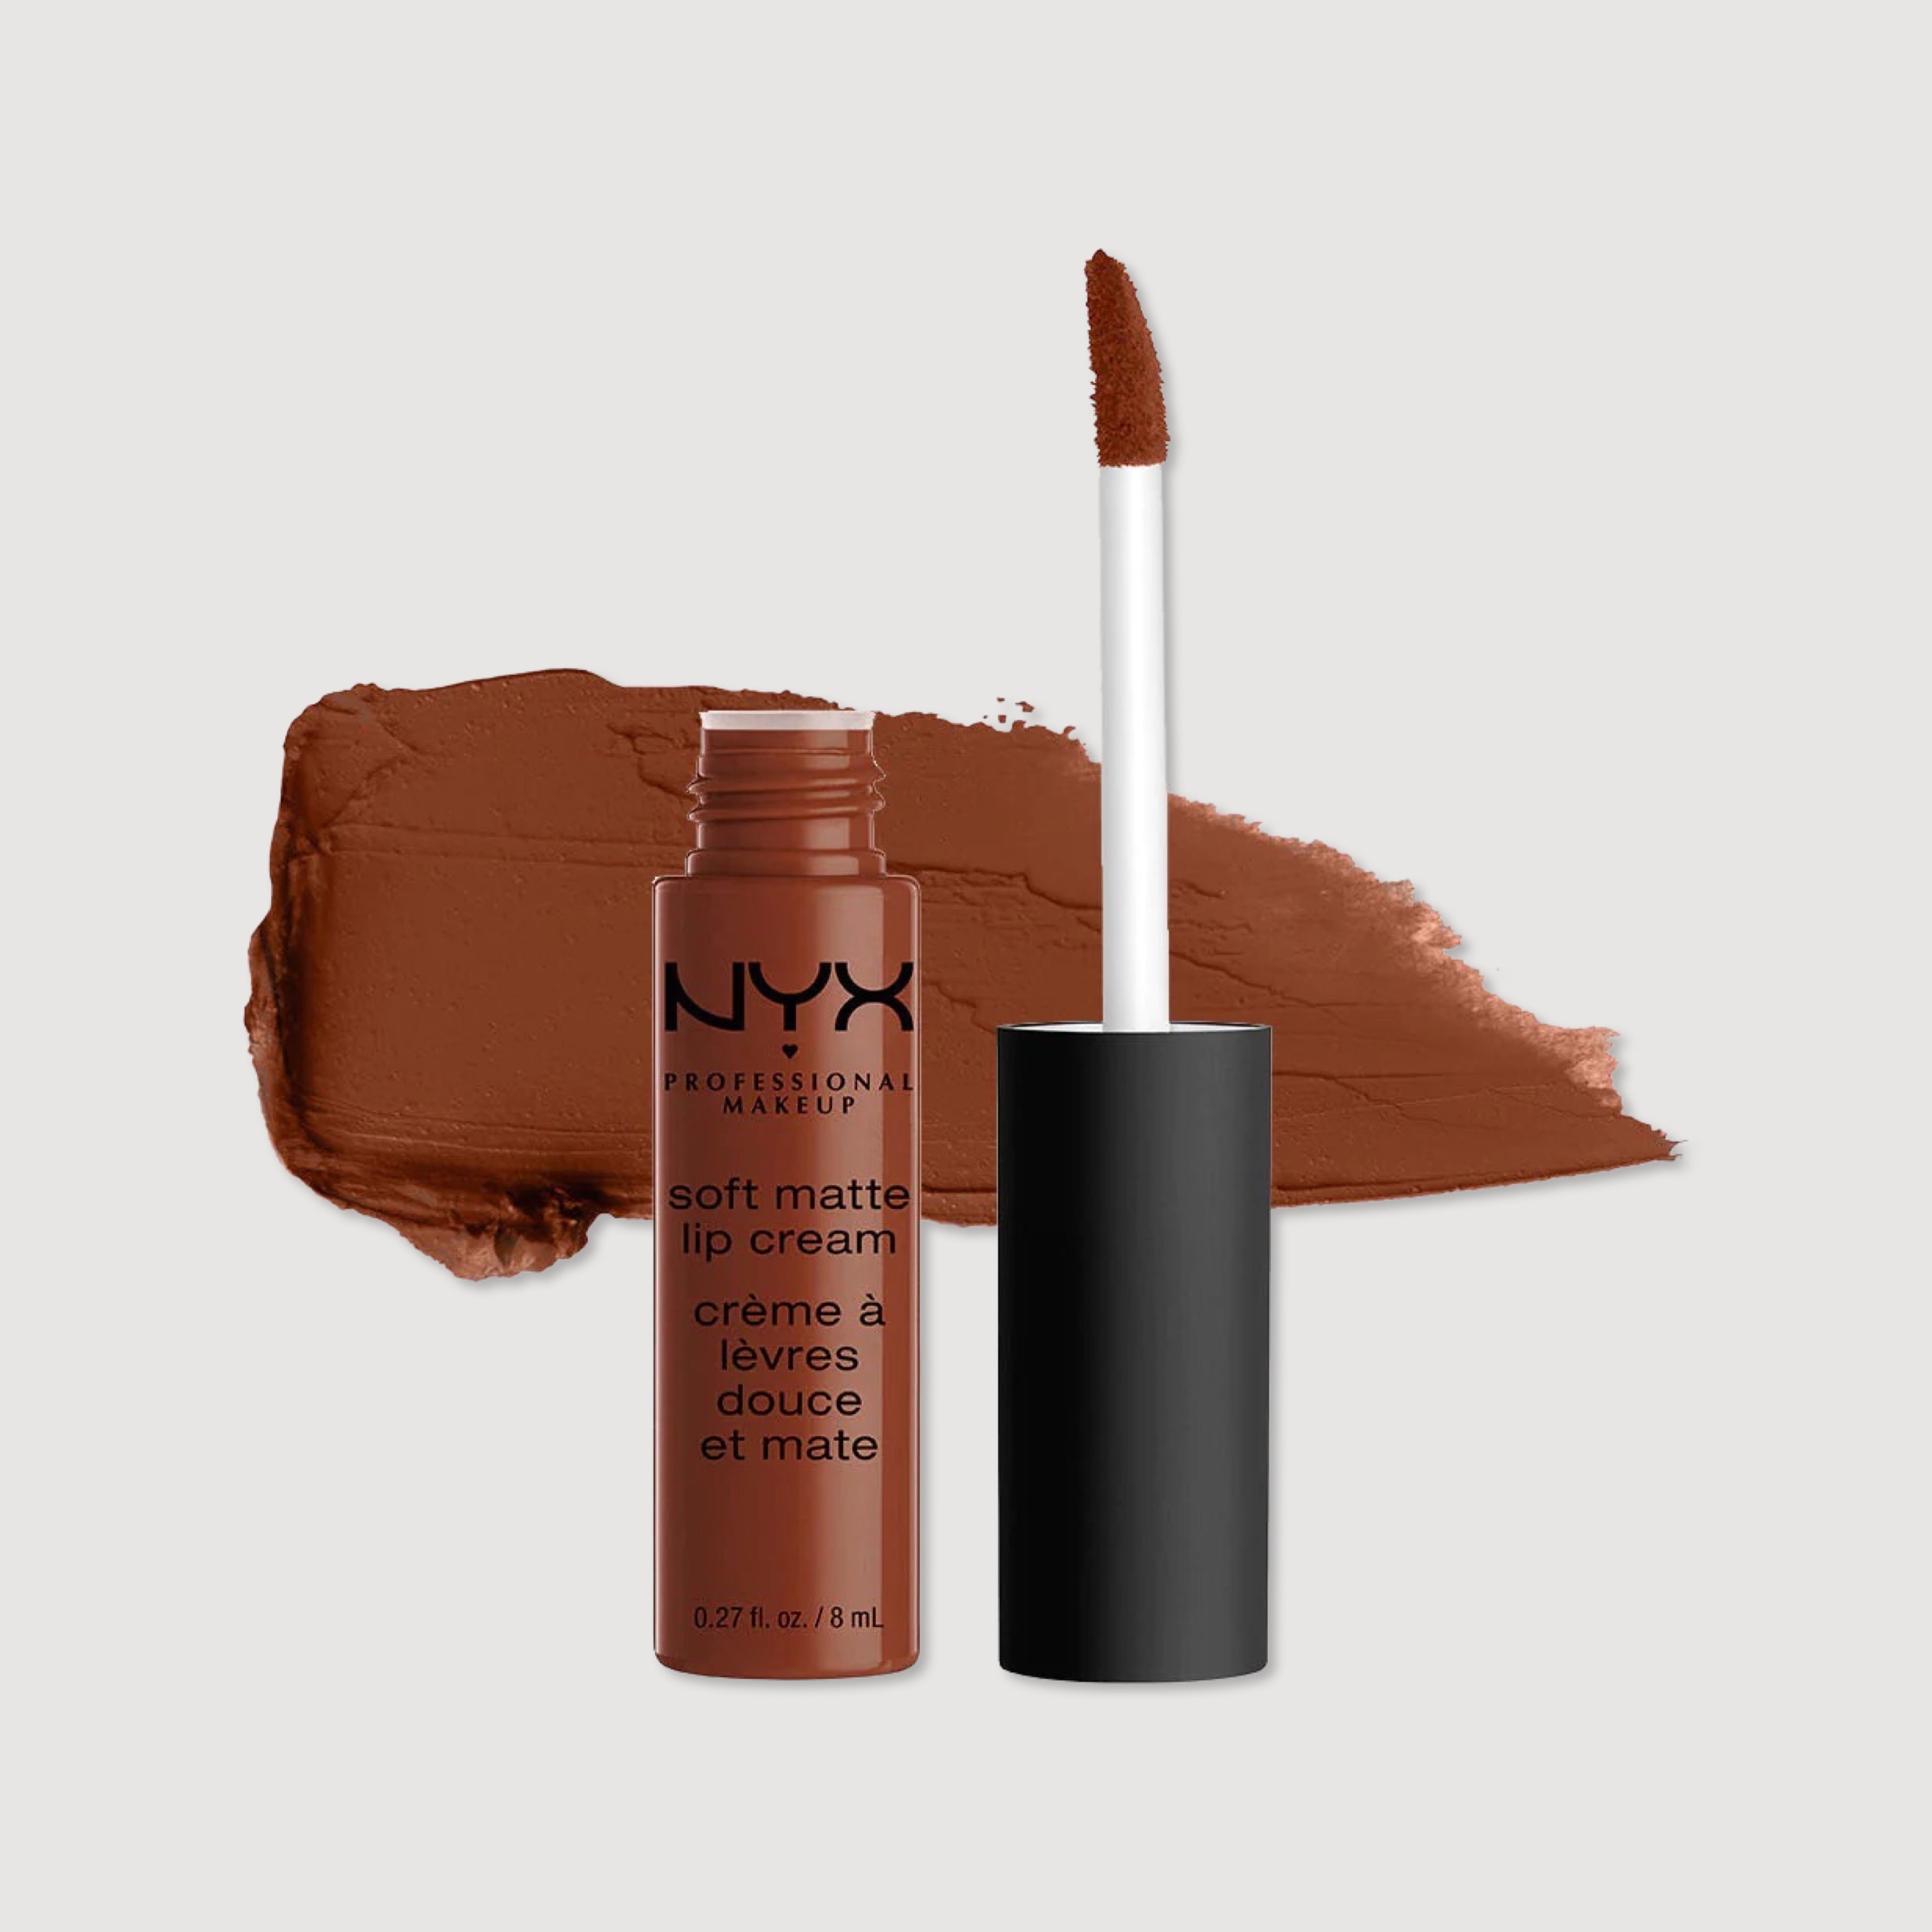 NYX Professional Makeup Soft Matte Lip Crème